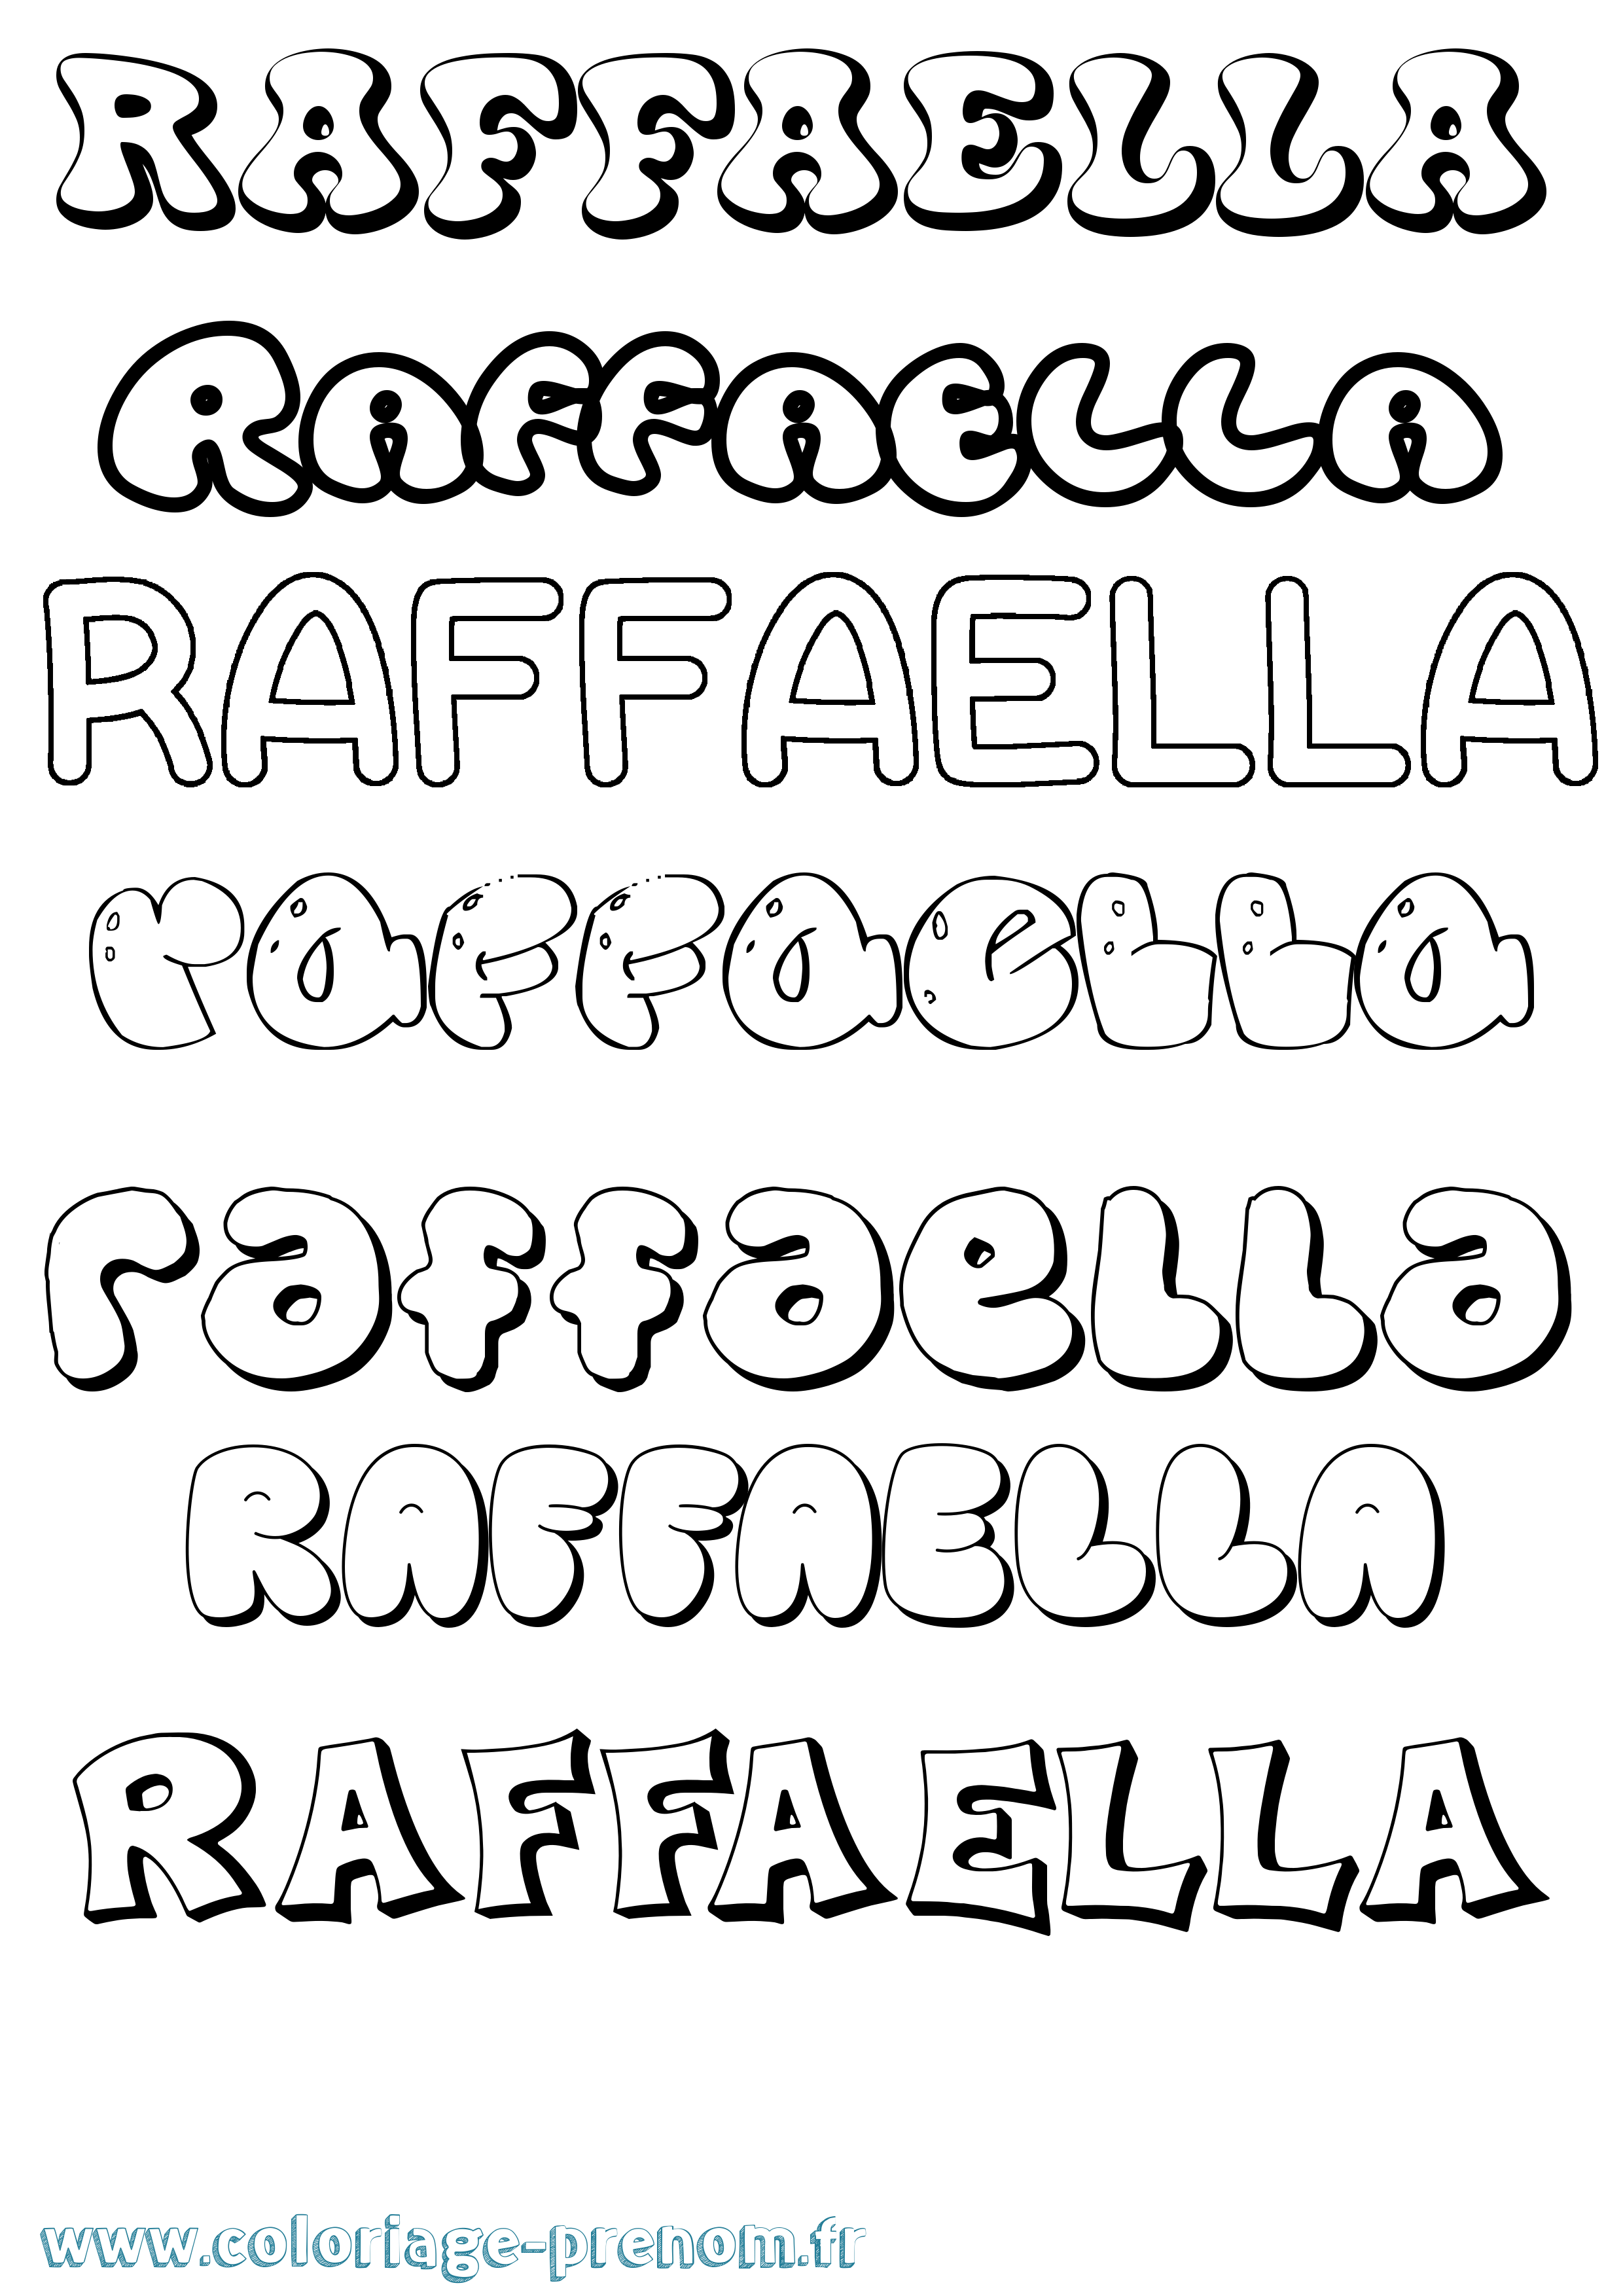 Coloriage prénom Raffaella Bubble